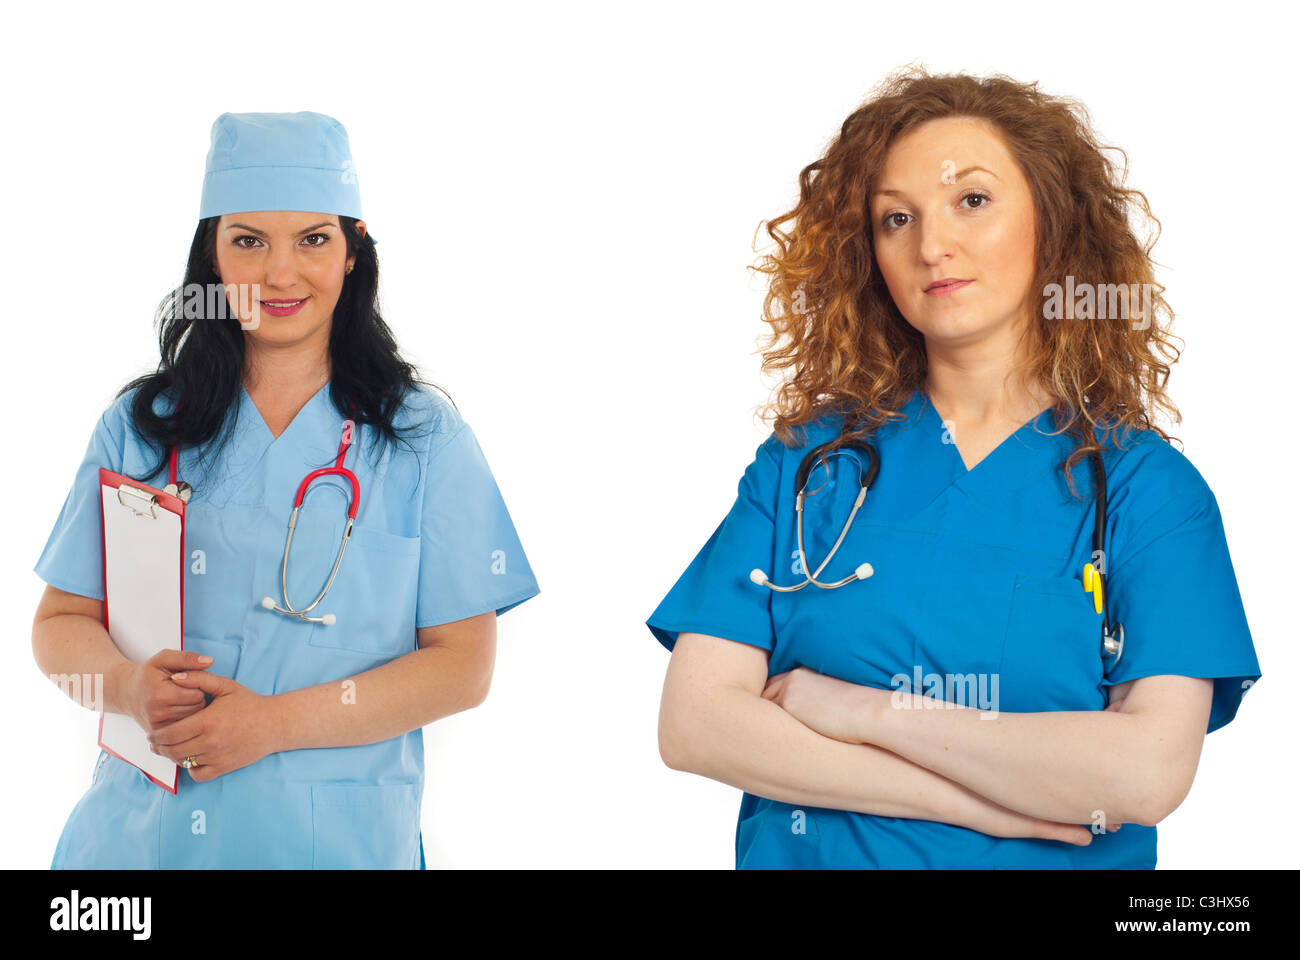 Bellezza redhead medico donna con le braccia incrociate in piedi nella parte anteriore della fotocamera e il suo collega bruna donna in background Foto Stock